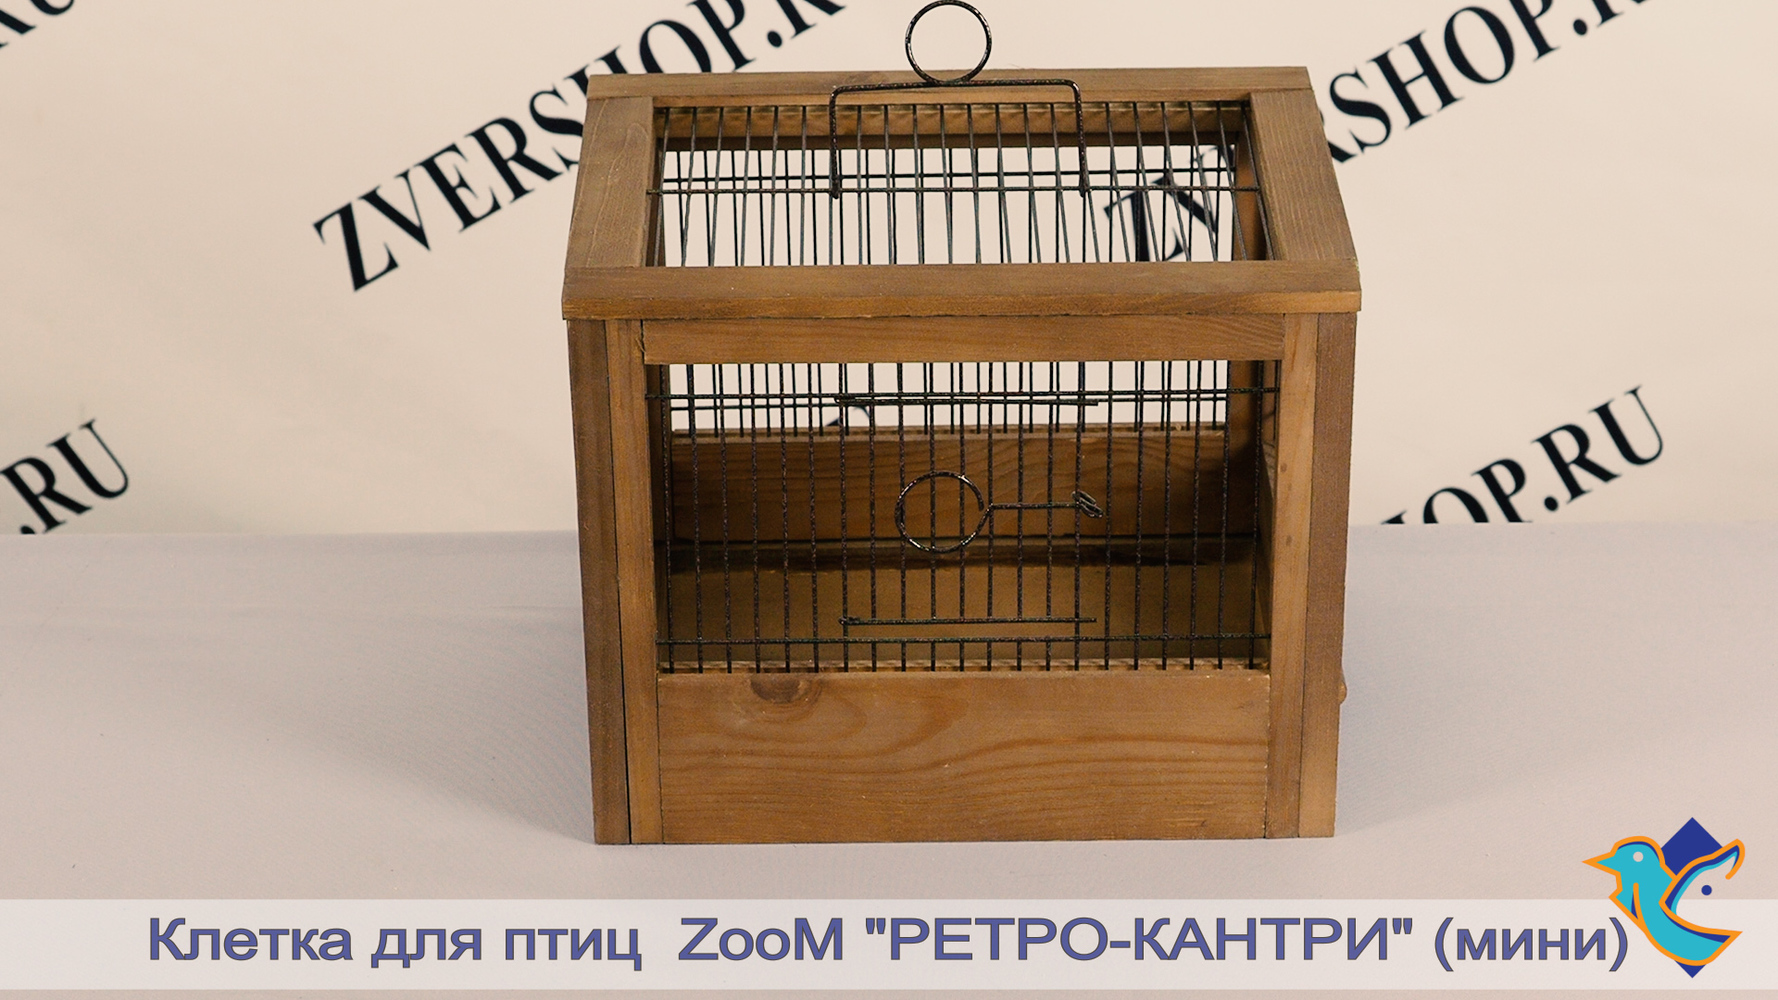 Фото Клетка ZooM для птиц деревянная "Ретро - кантри", мини, (31*23,5*25 см) 